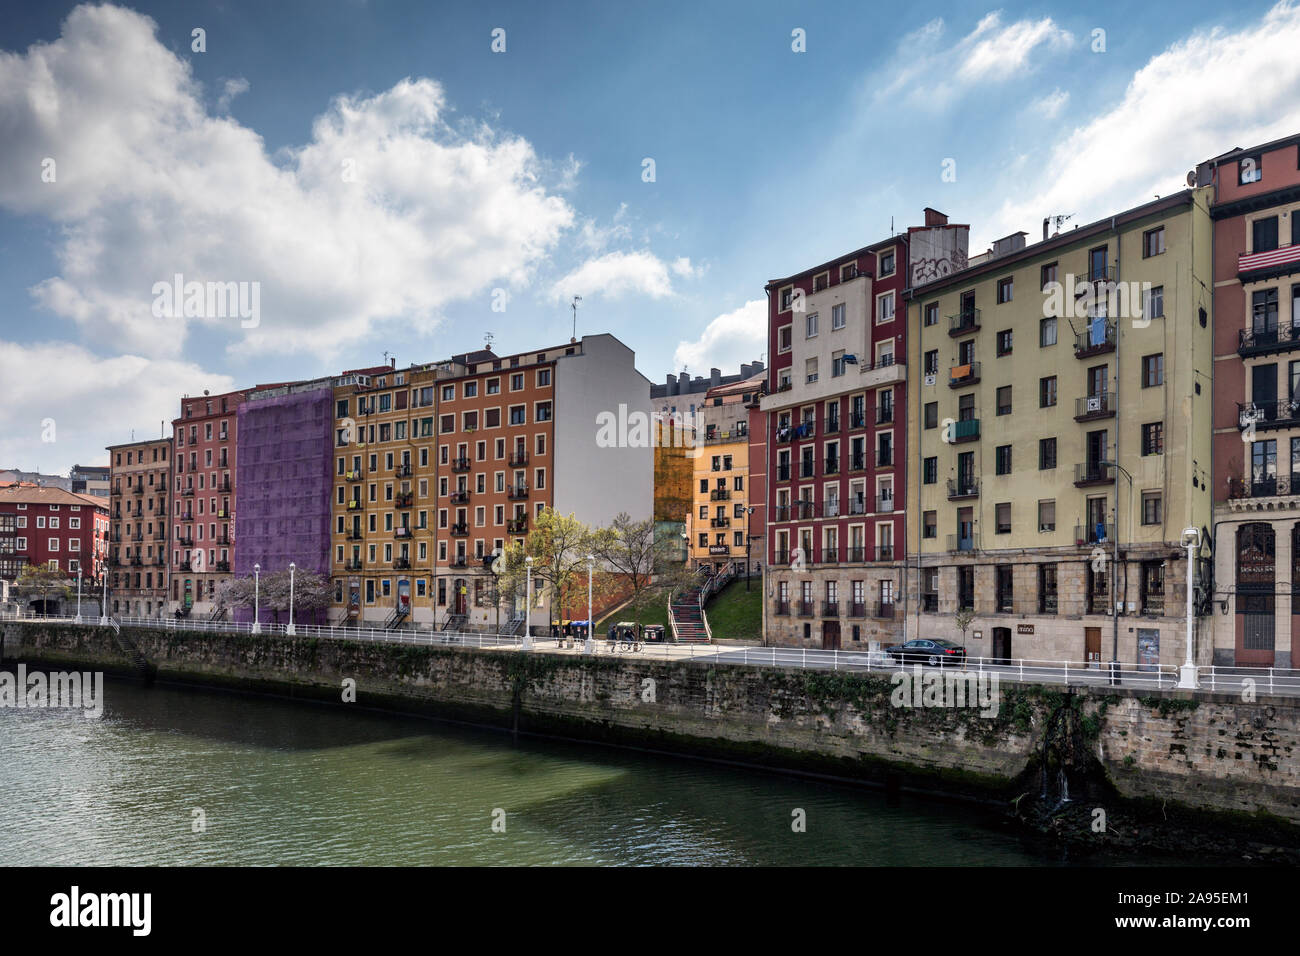 Maisons colorées et des appartements sur les rives de la rivière Nervion. Vieille Ville (Casco Viejo), Bilbao, Espagne. Banque D'Images